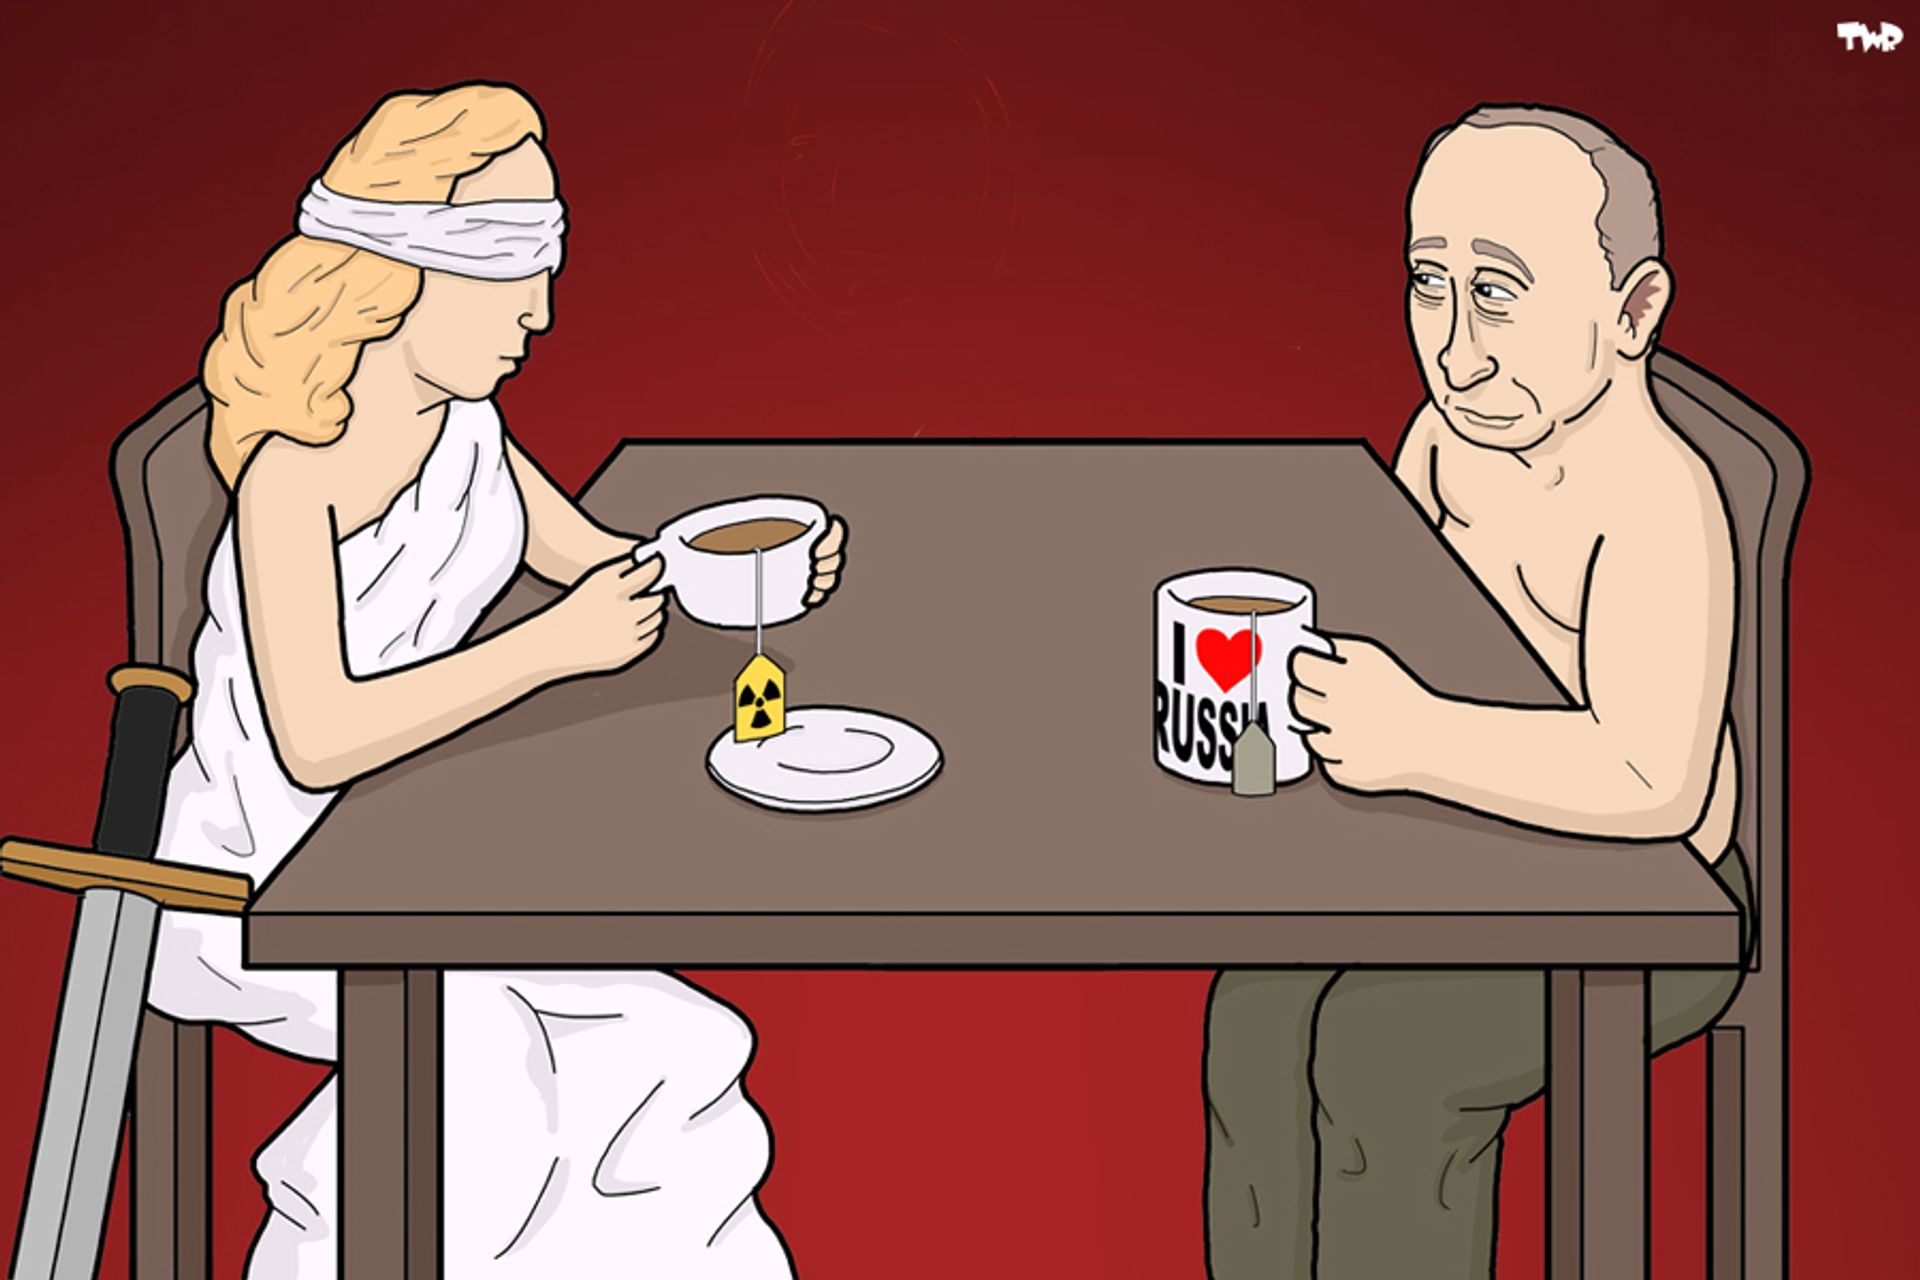 Putin-justice